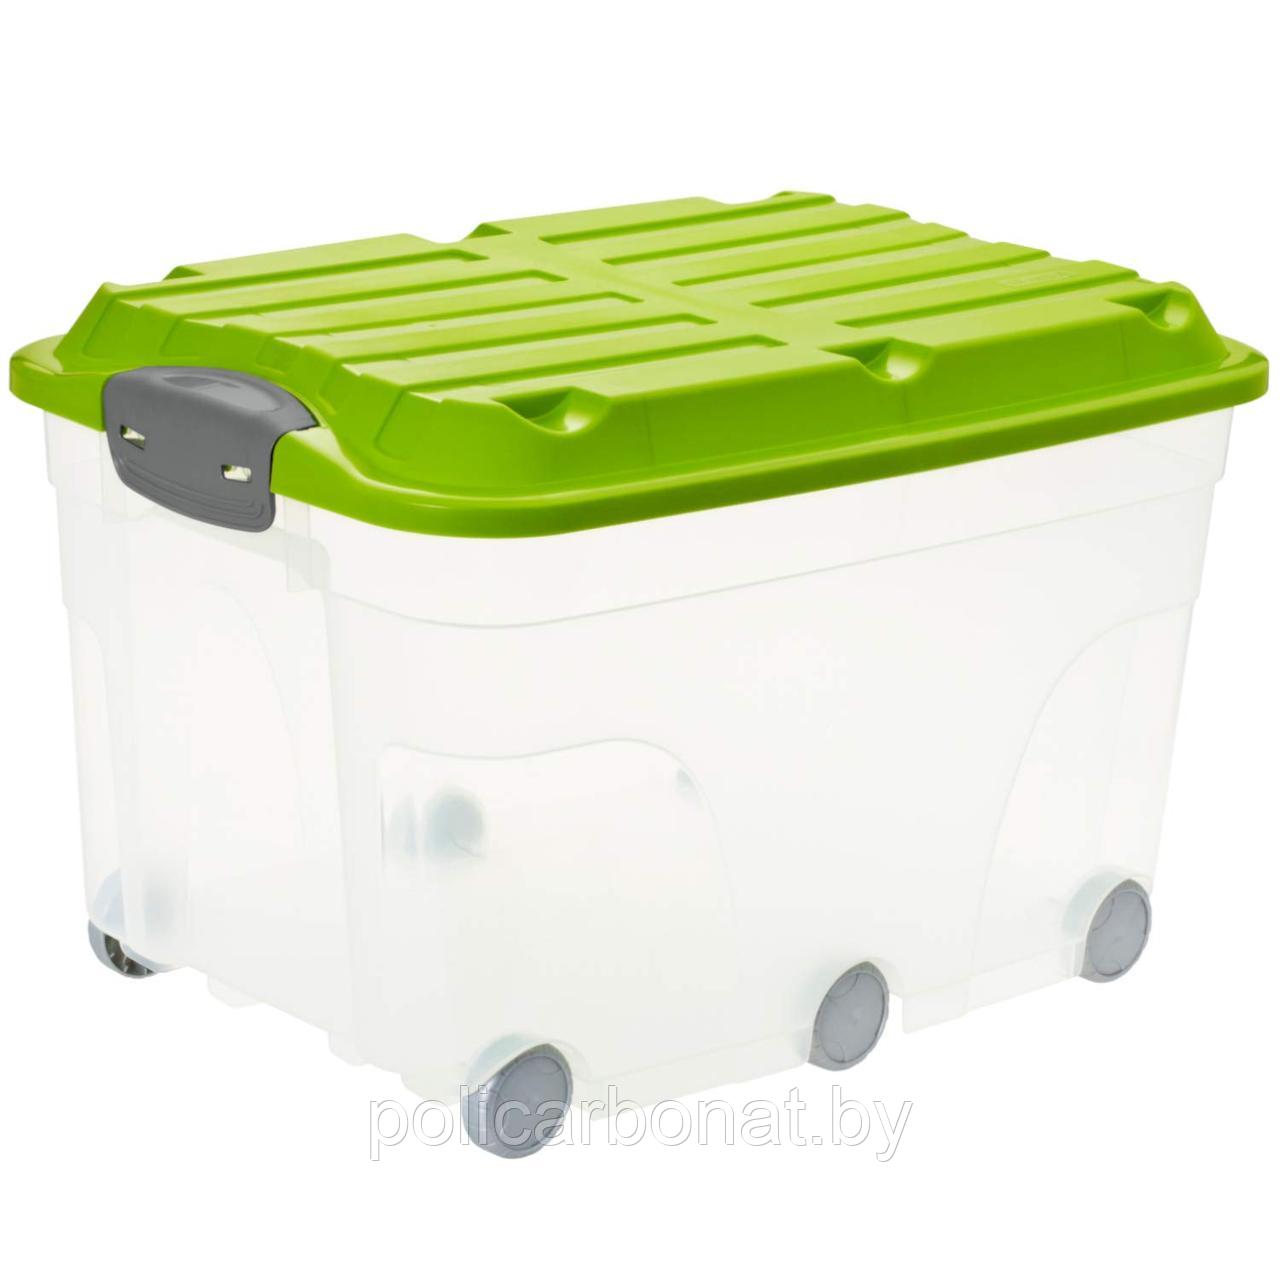 Контейнер для хранения с колесами Roller 57 л, прозрачный/зеленый